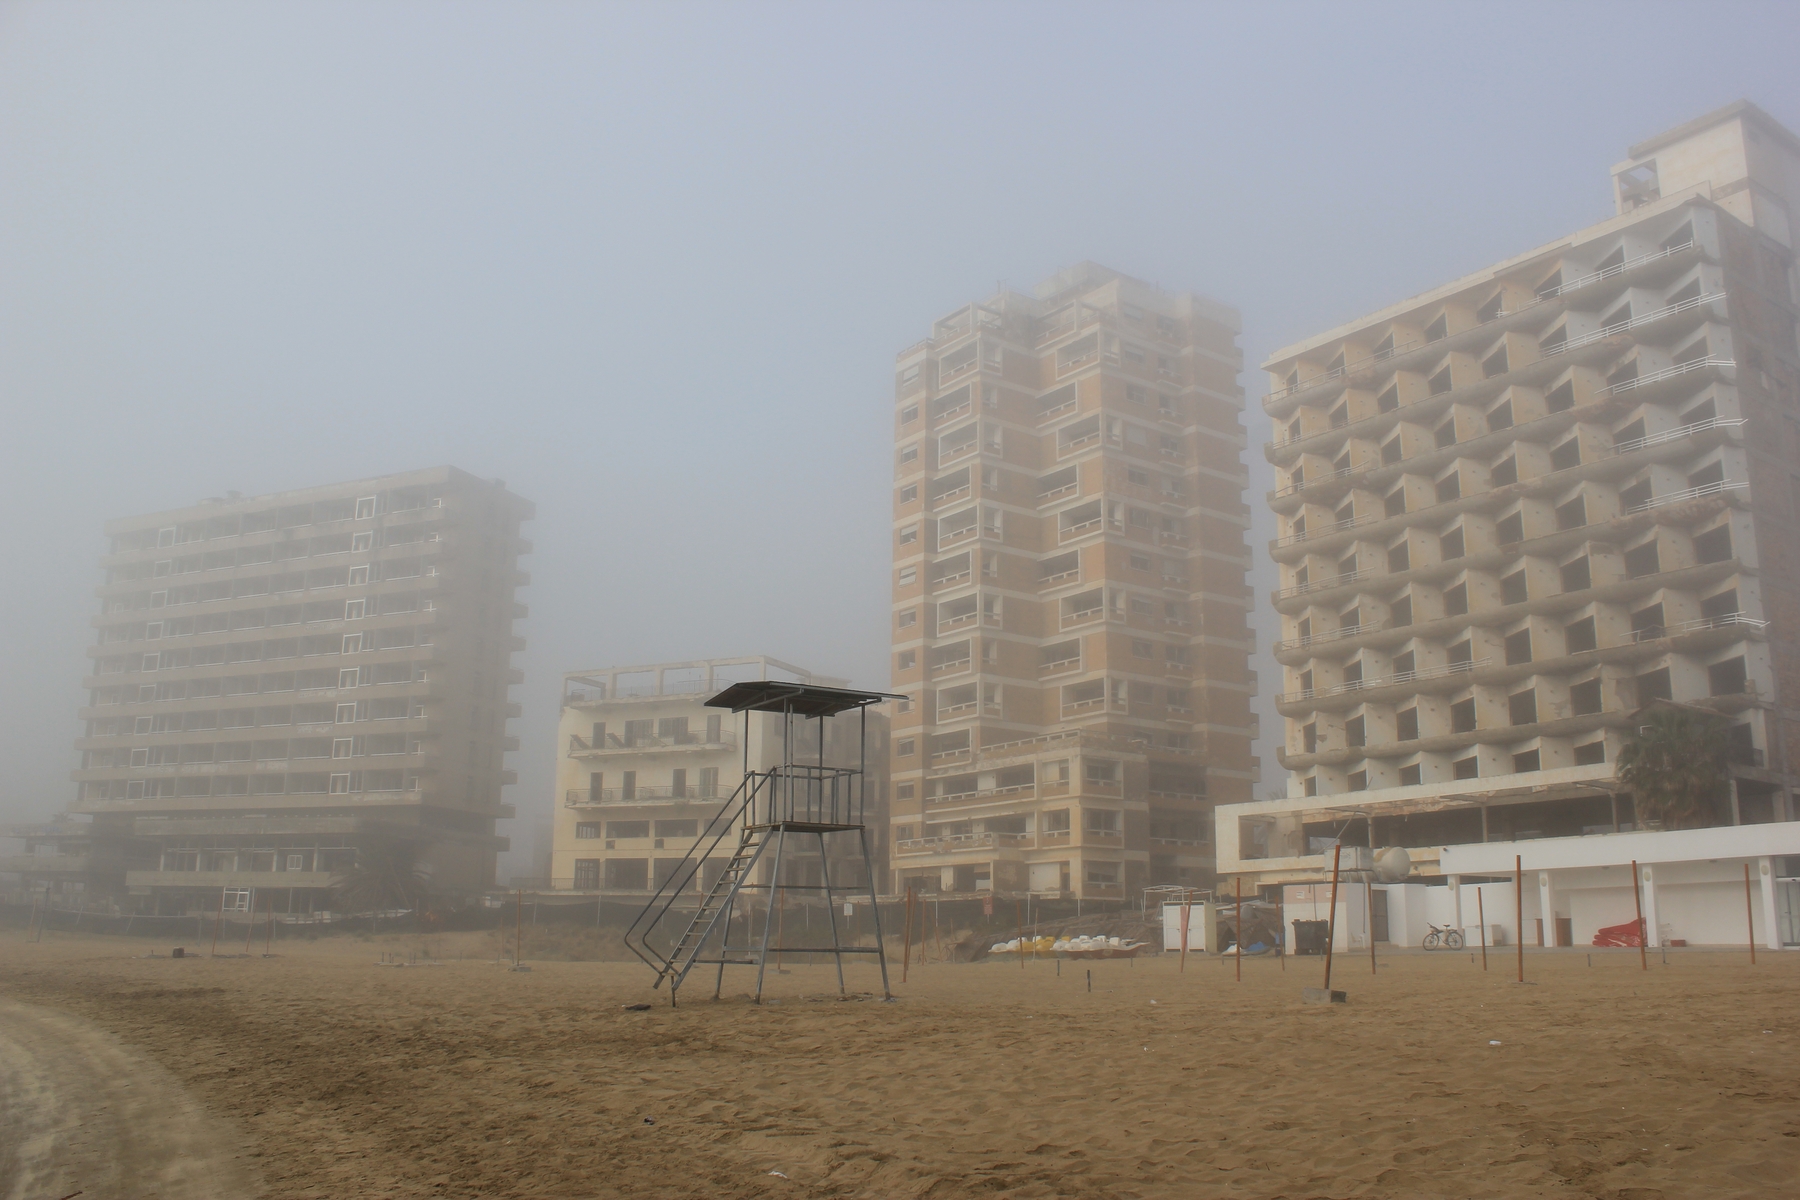 En tom strand med slitte bygninger i bakgrunnen